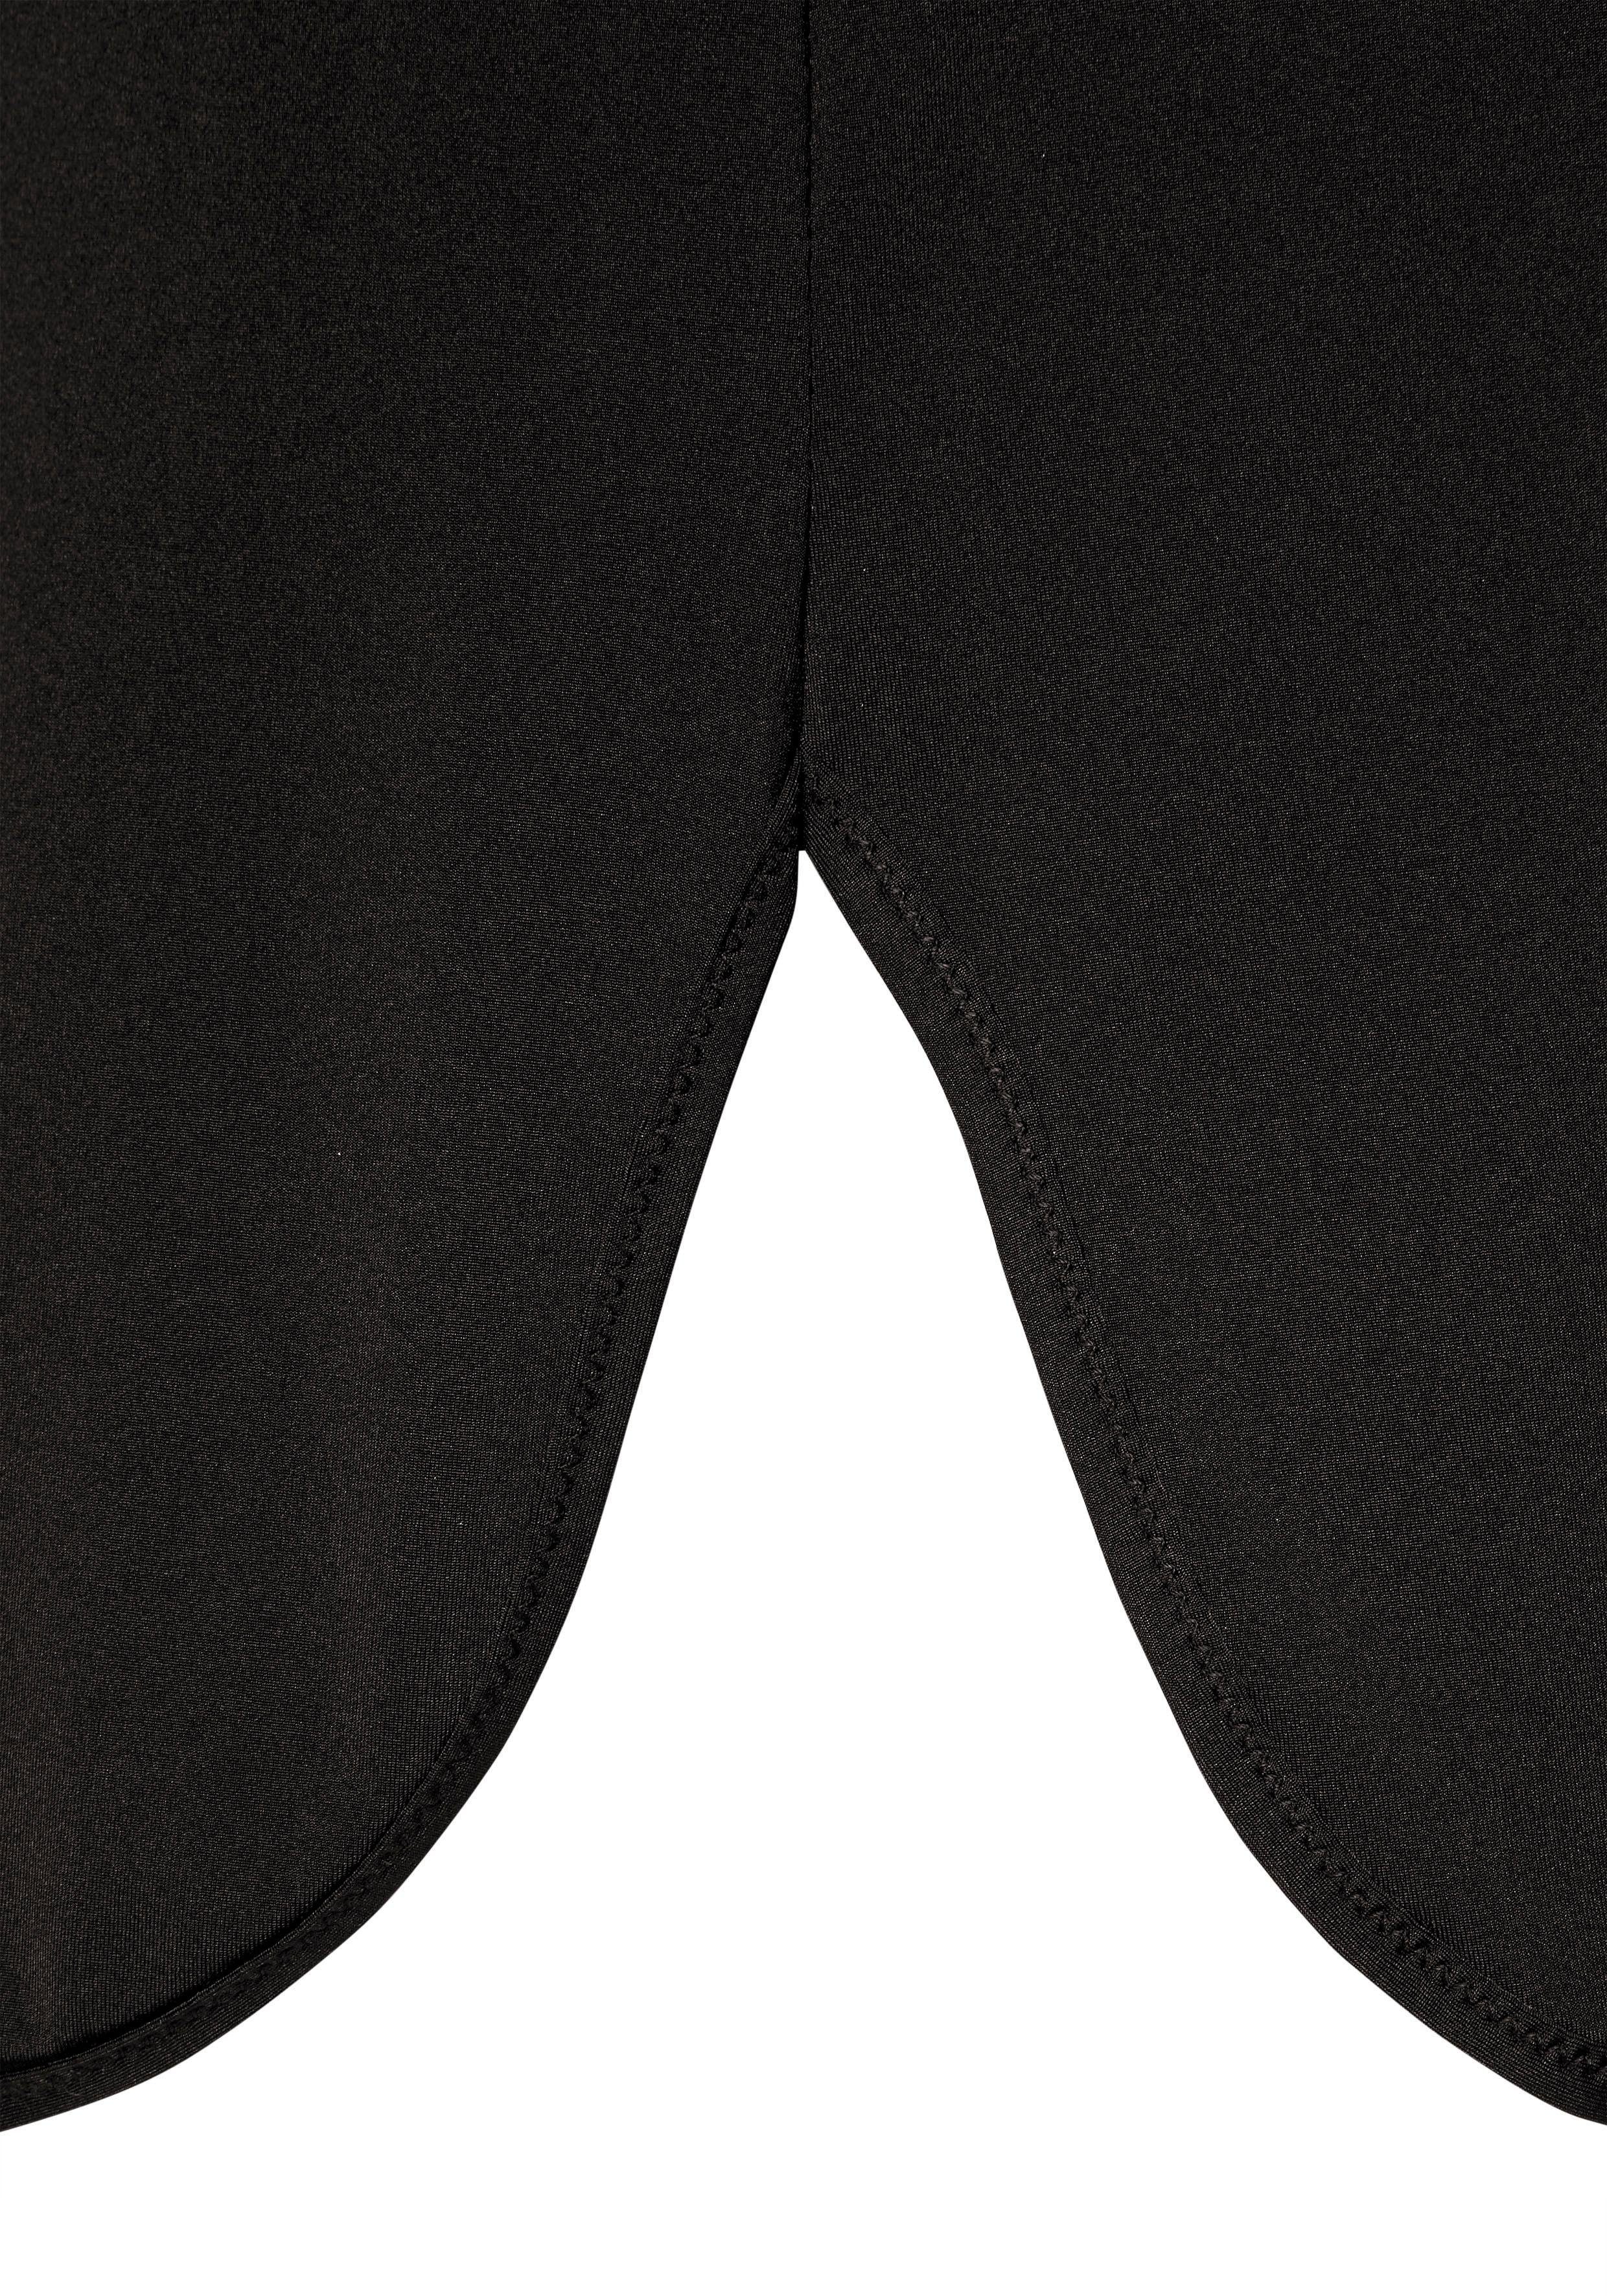 Röcke, Nuance Basic für Dessous schwarz kurze Unterrock